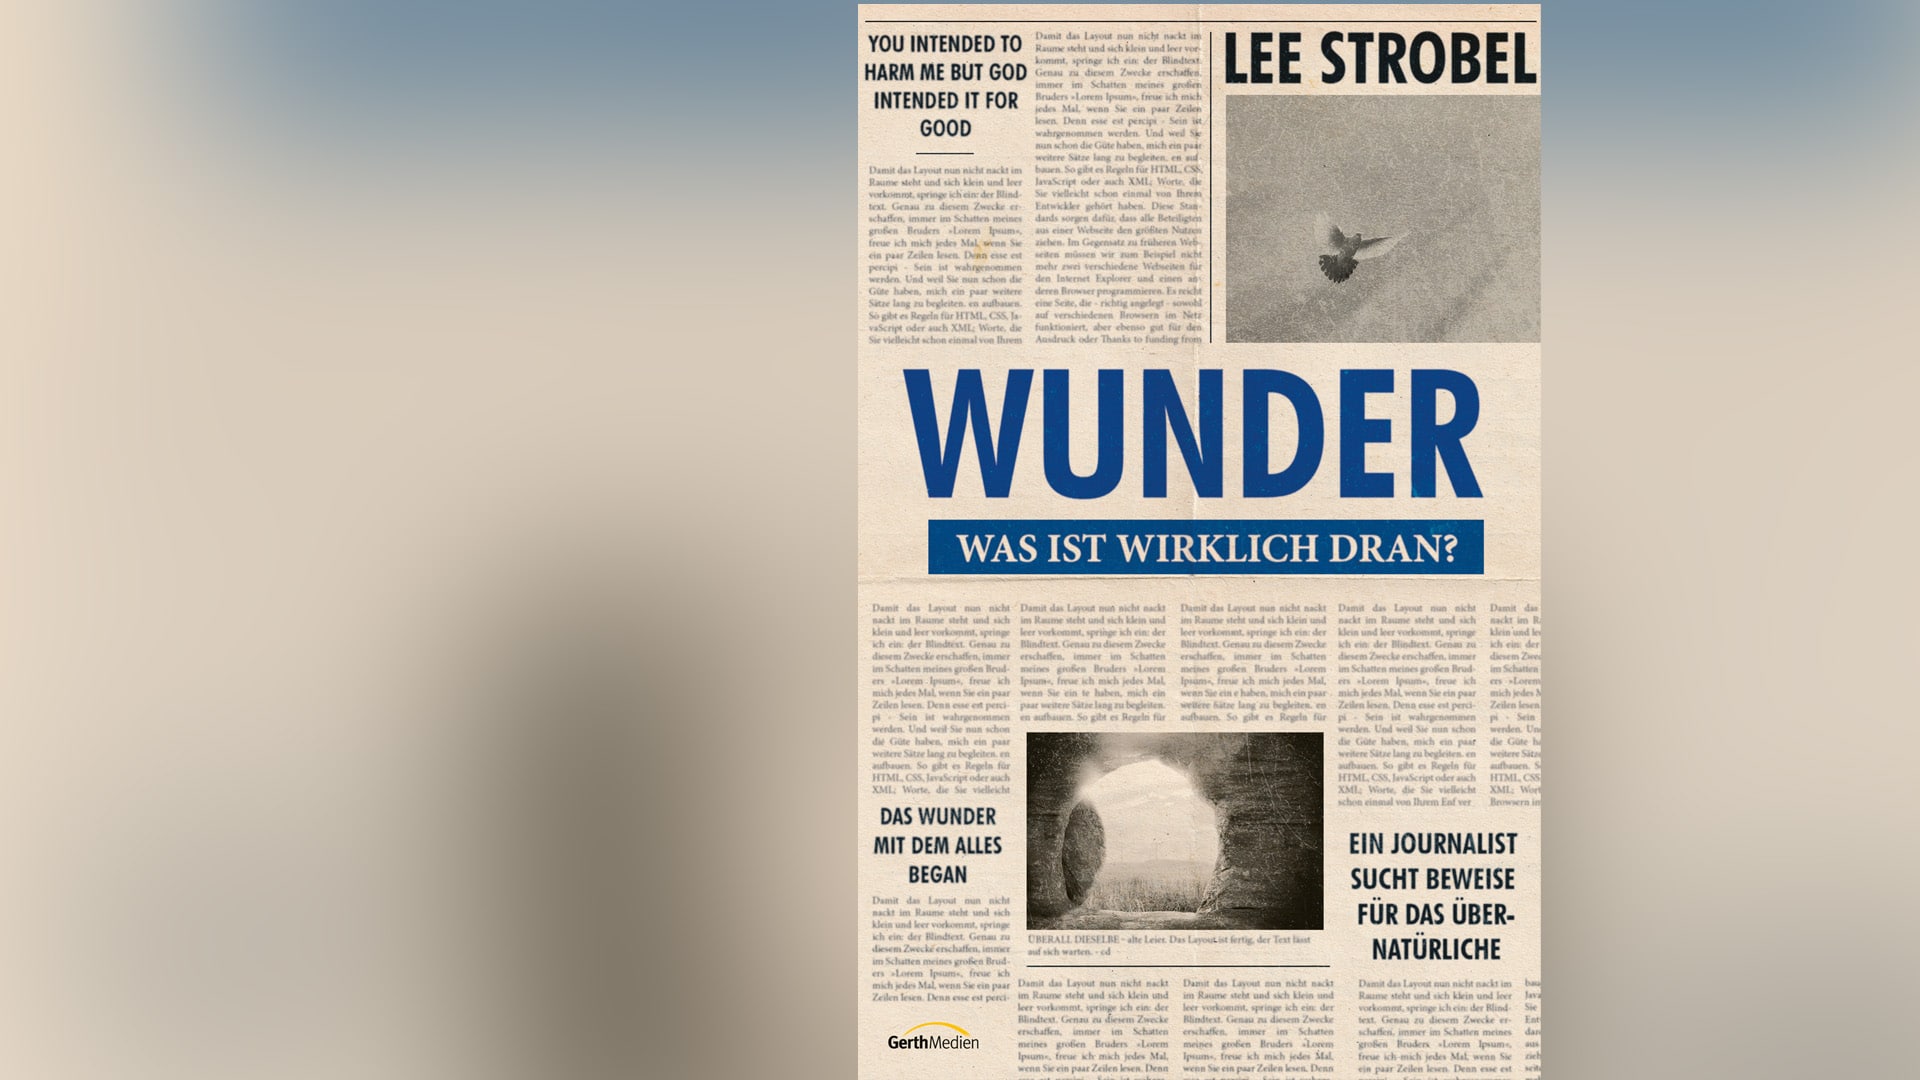 Der ehemalige Journalist Lee Strobel macht sich in seinem Buch auf die Suche nach Wundern